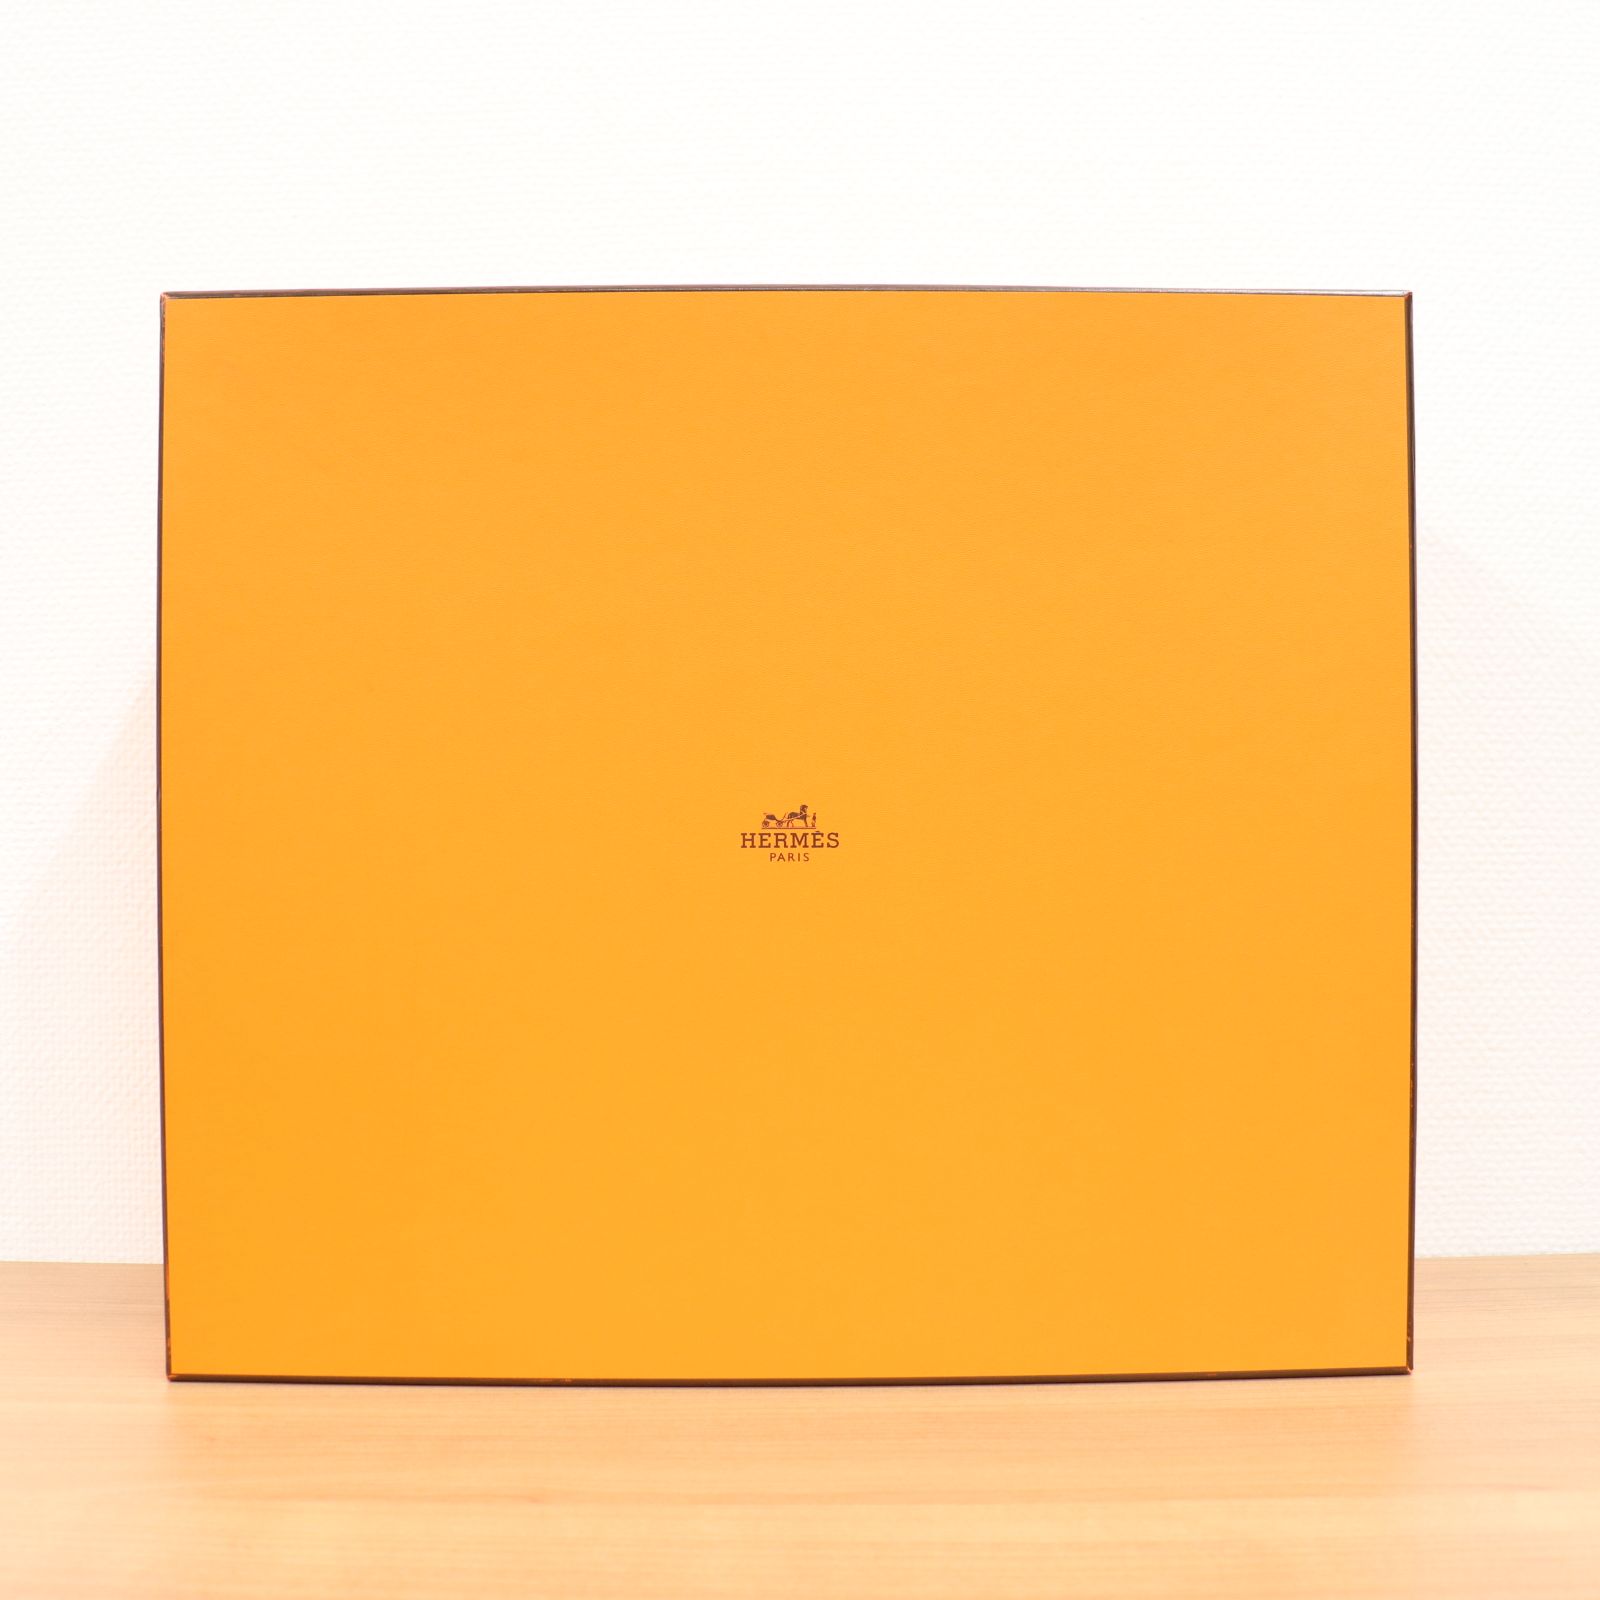 ITSXWS3U099S エルメス オレンジボックス BOX 空き箱 空箱 保存箱 化粧